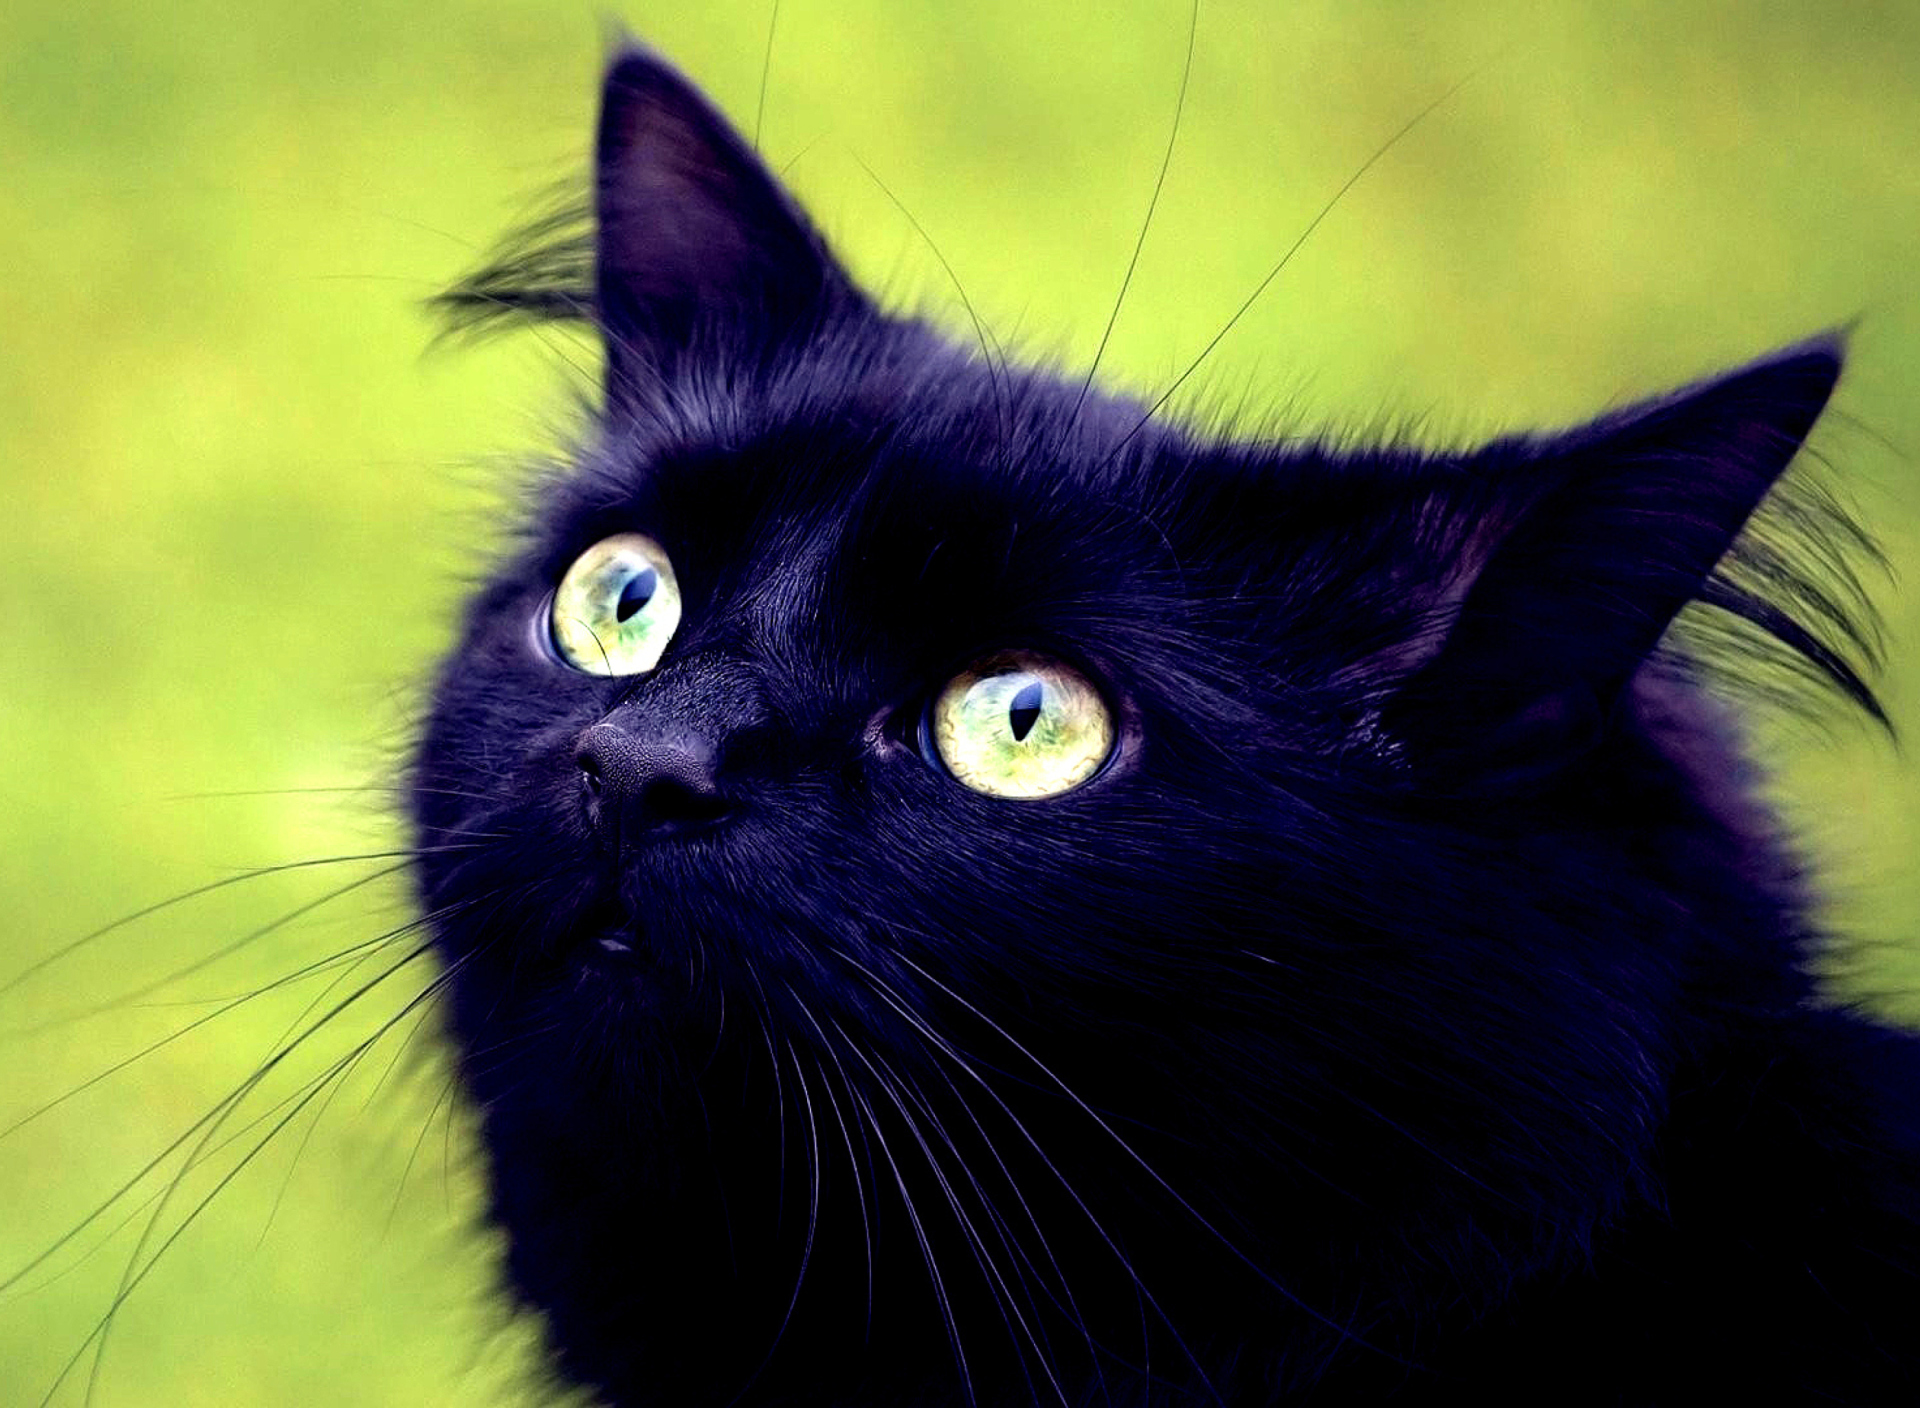 Sfondi Blackest Black Cat And Green Grass 1920x1408